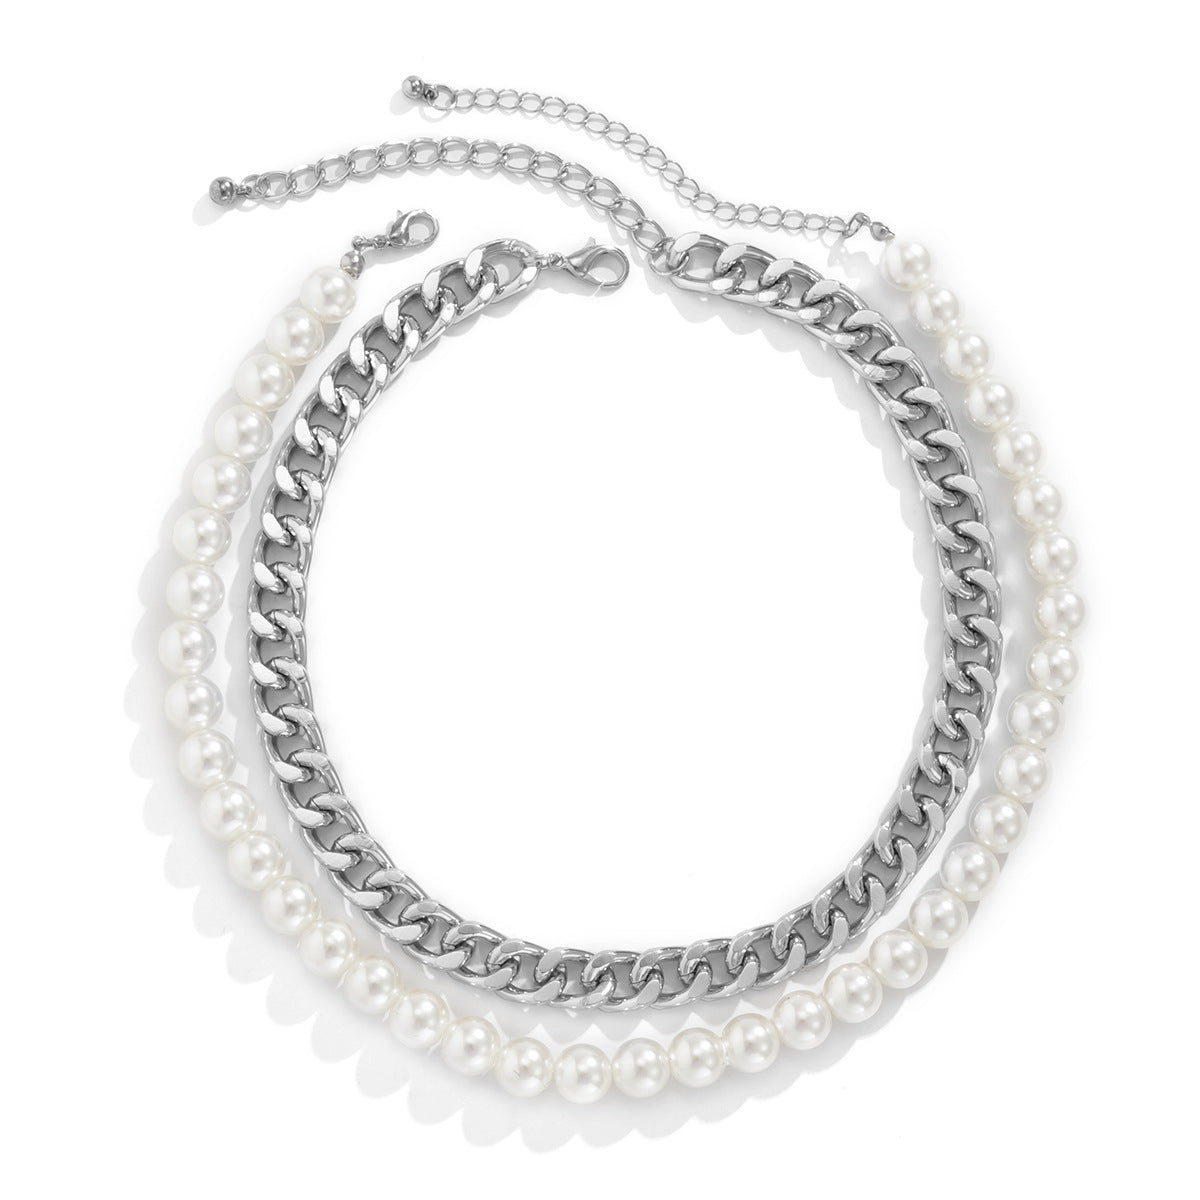 Hip Hop Style Chain Desgin Necklaces for Women